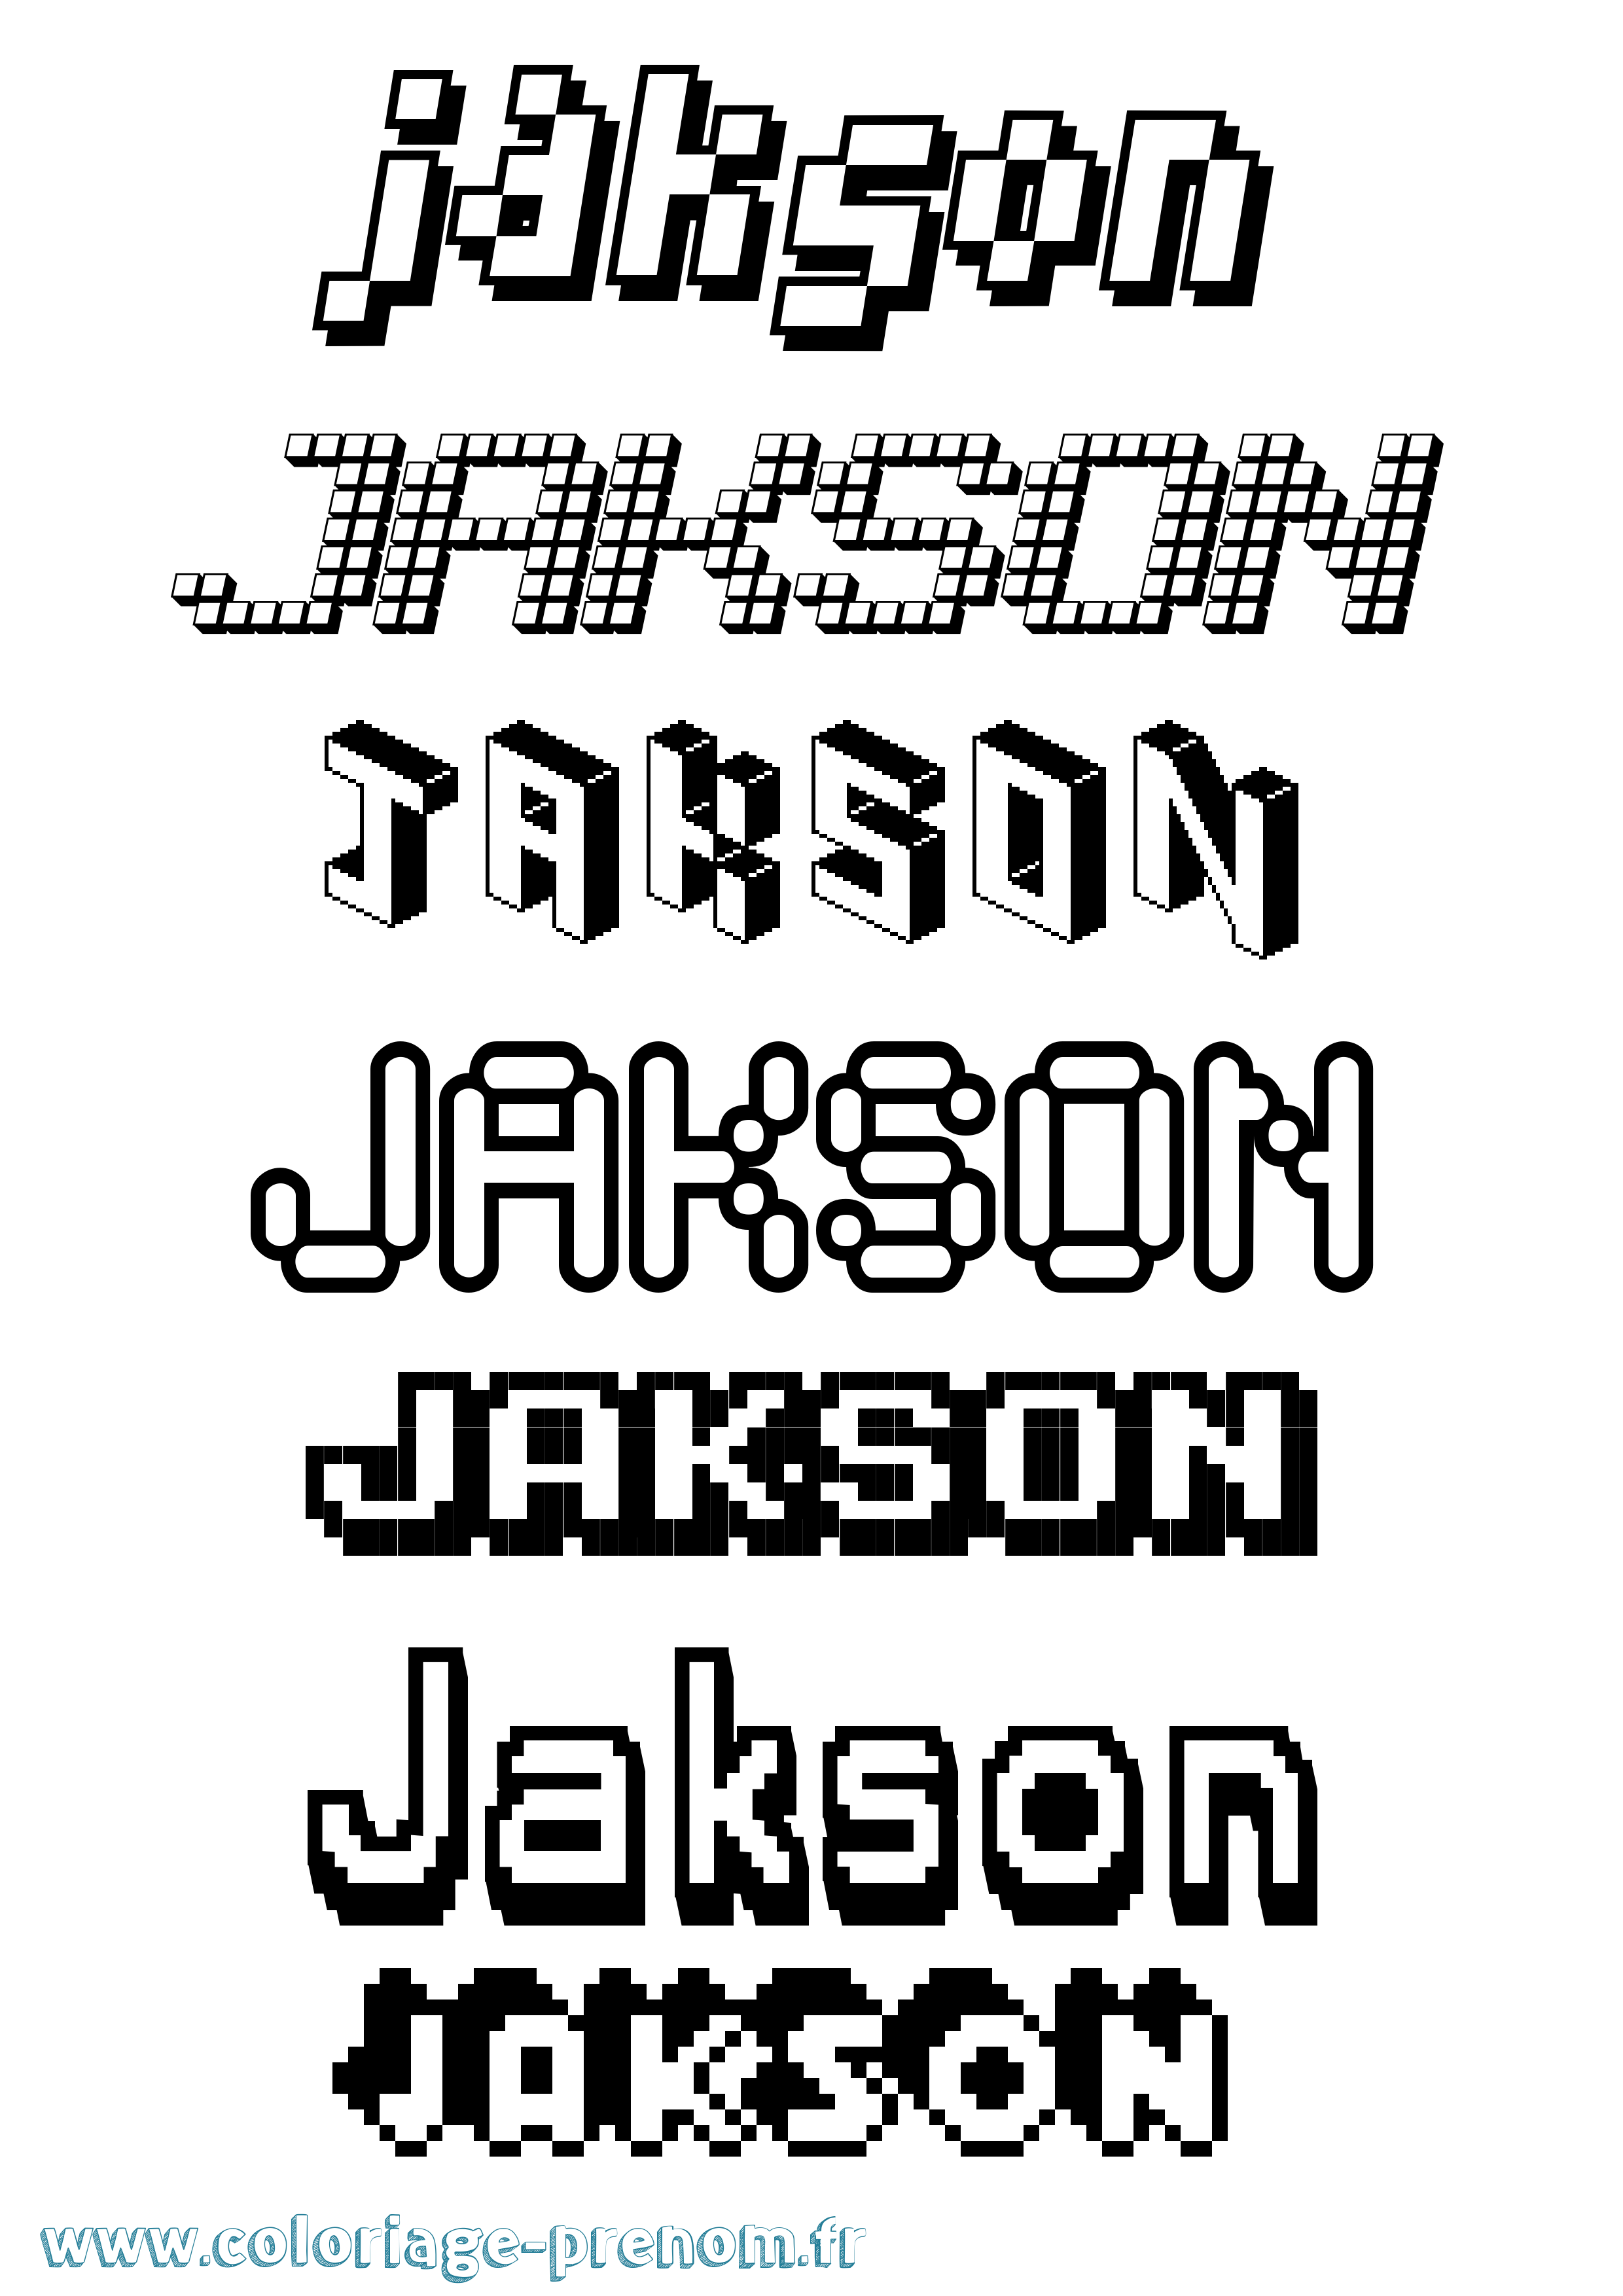 Coloriage prénom Jakson Pixel